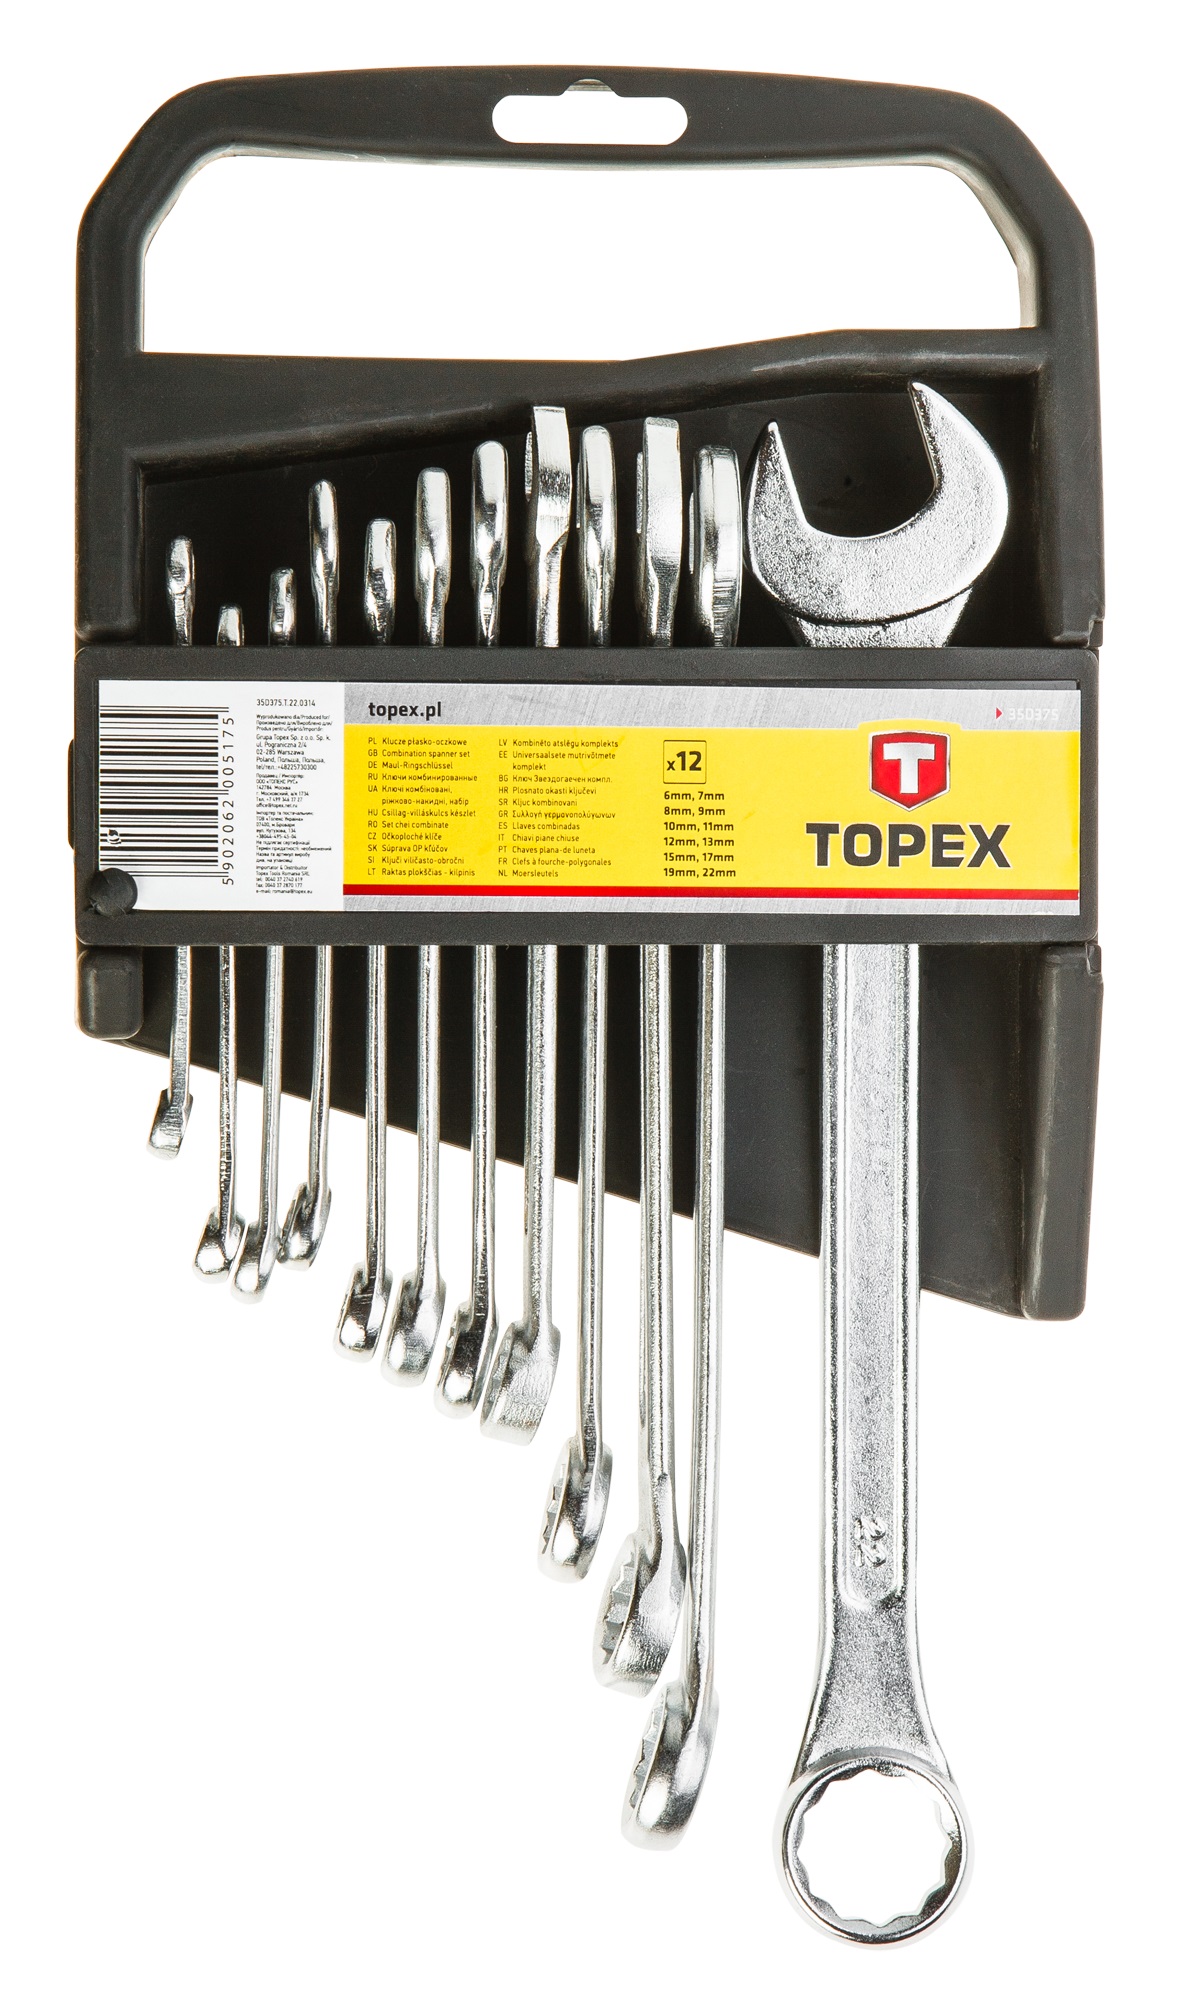 Отзывы набор ключей Topex 35D375 в Украине